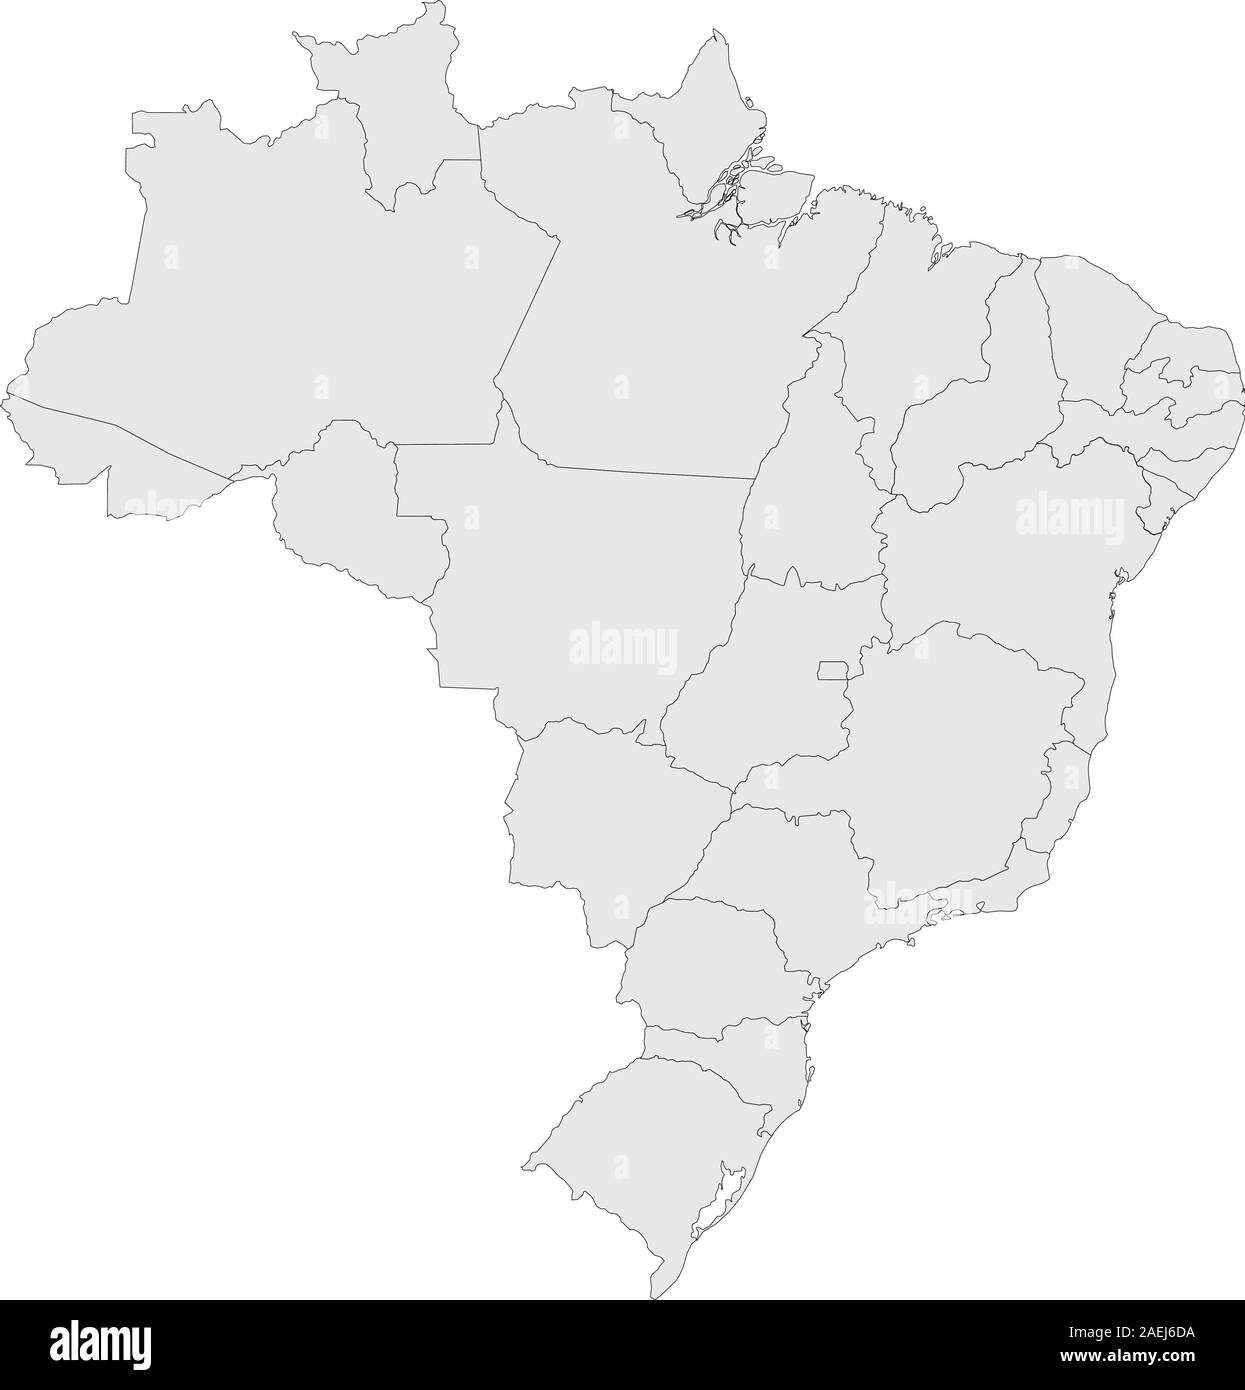 Moderno brasile mappa politica evidenziata con province illustrazione vettoriale. Colore grigio chiaro dello sfondo. Illustrazione Vettoriale